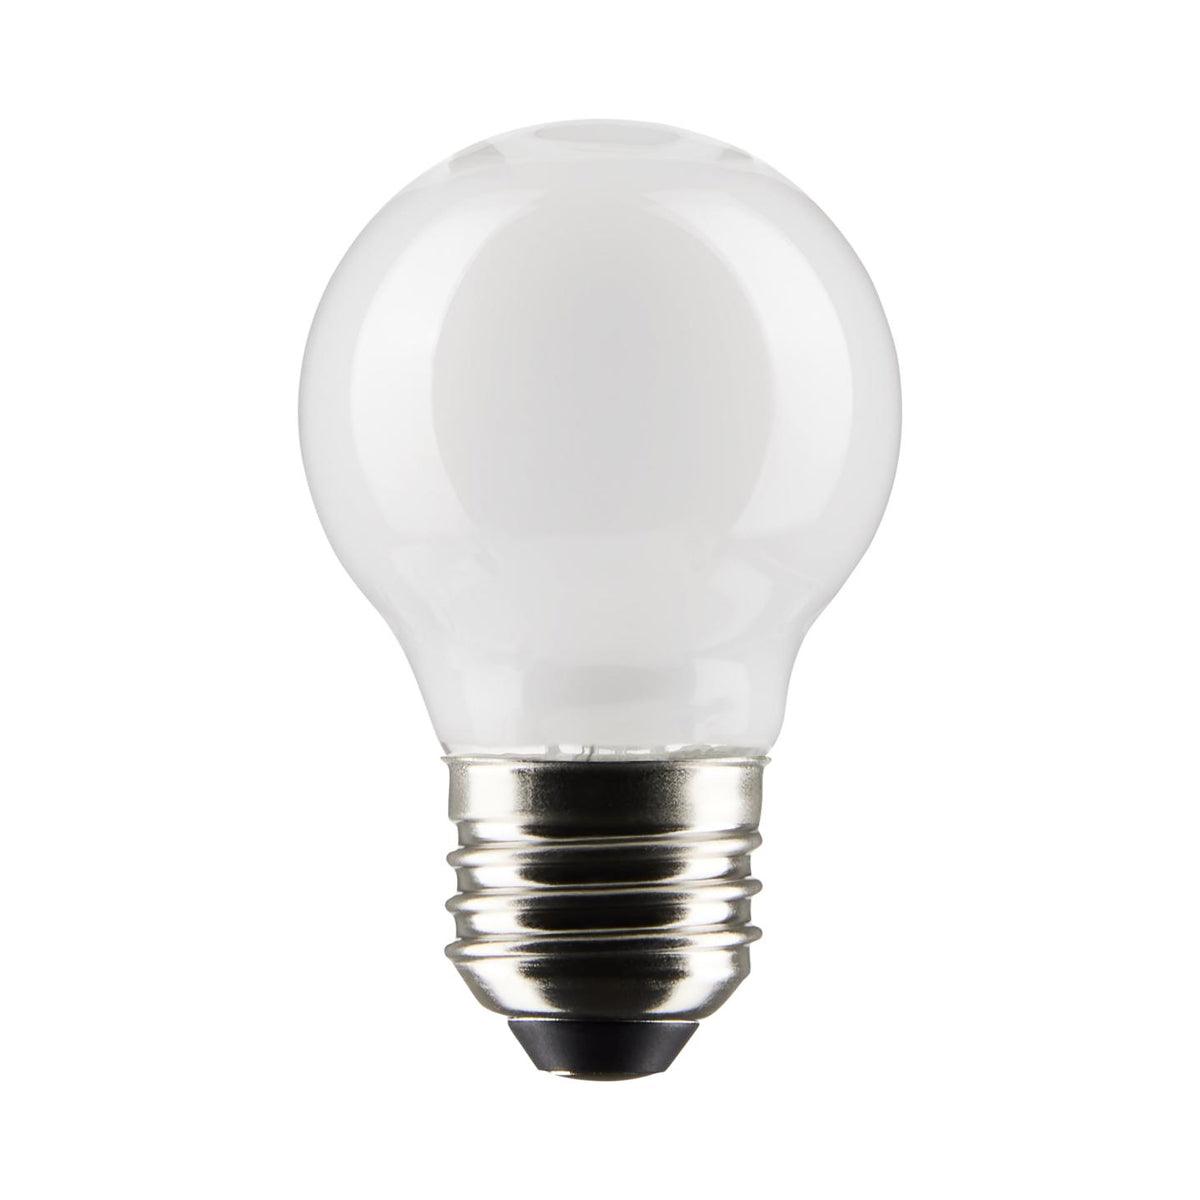 G16.5 LED Globe Bulb, 5 Watt, 350 Lumens, 2700K, E26 Medium Base, Frosted Finish, Pack Of 2